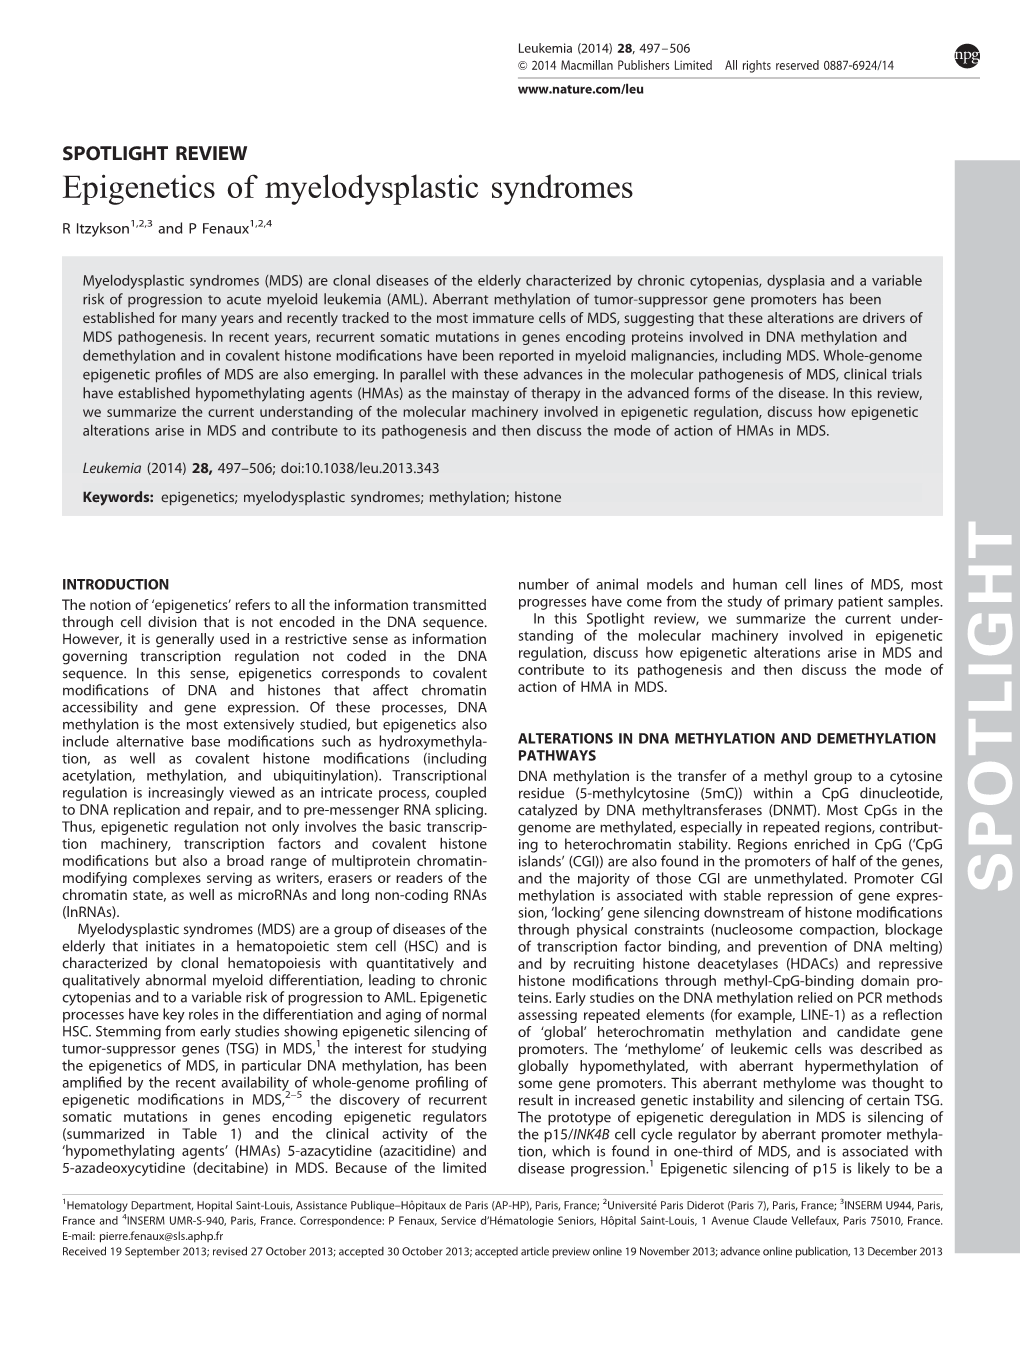 Epigenetics of Myelodysplastic Syndromes